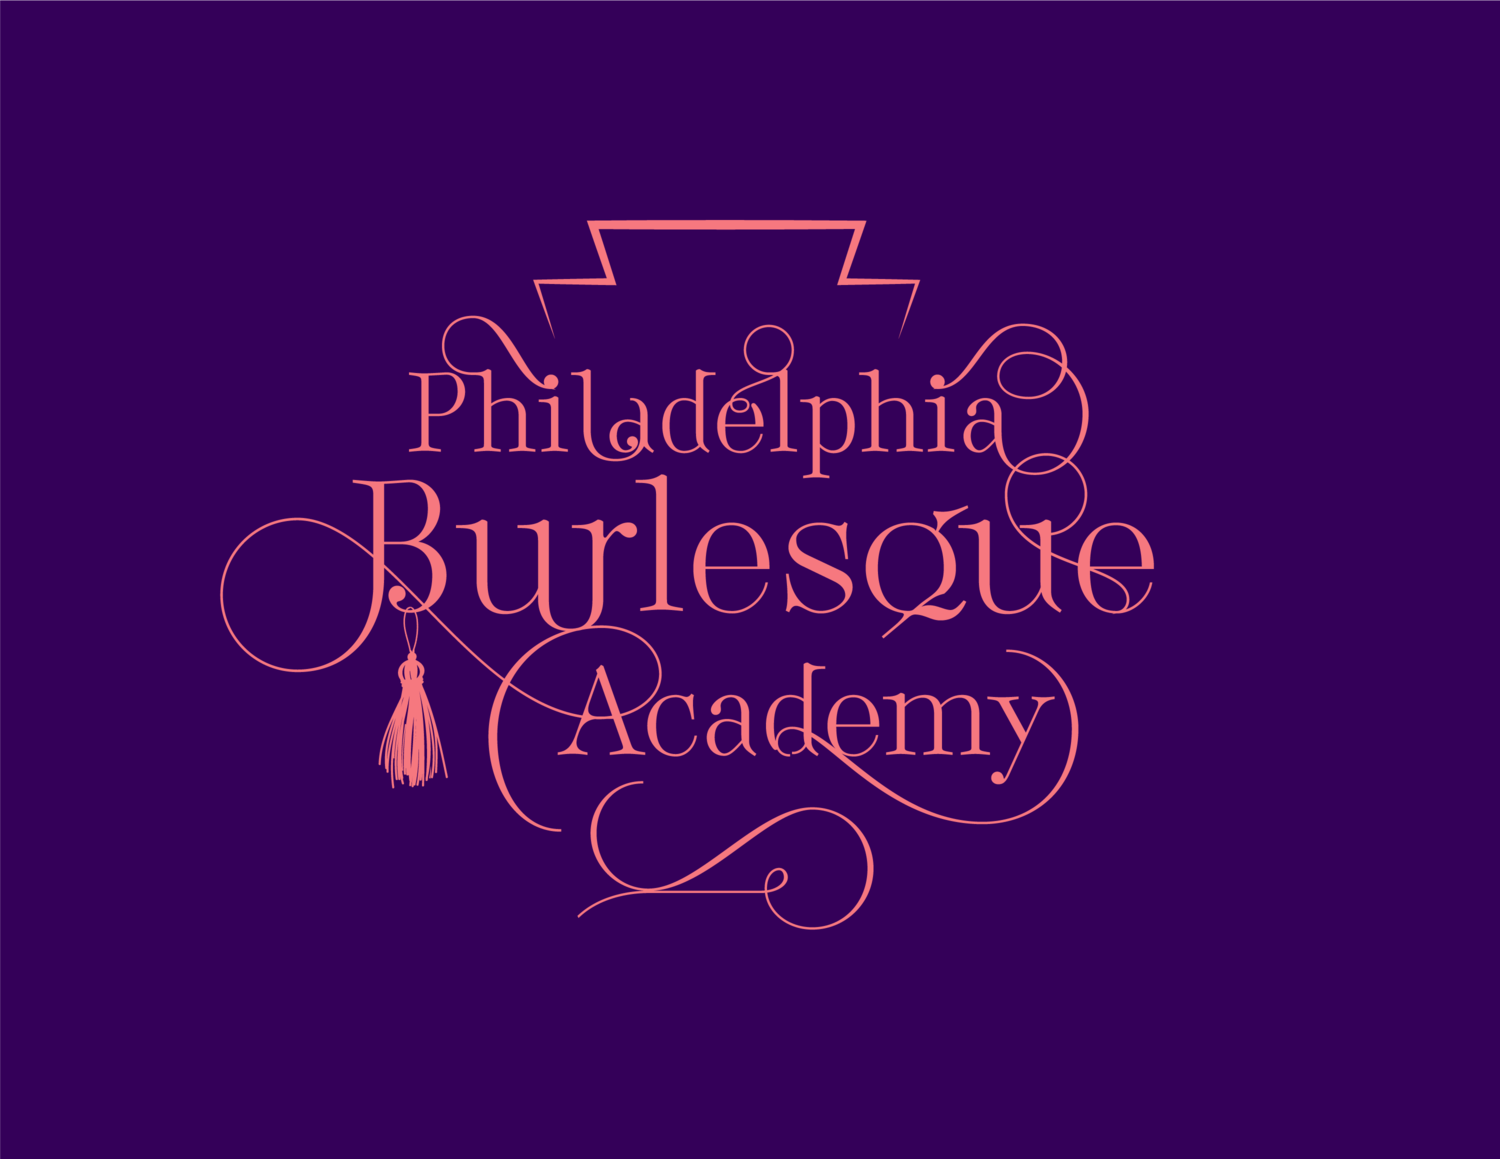 Philadelphia Burlesque Academy